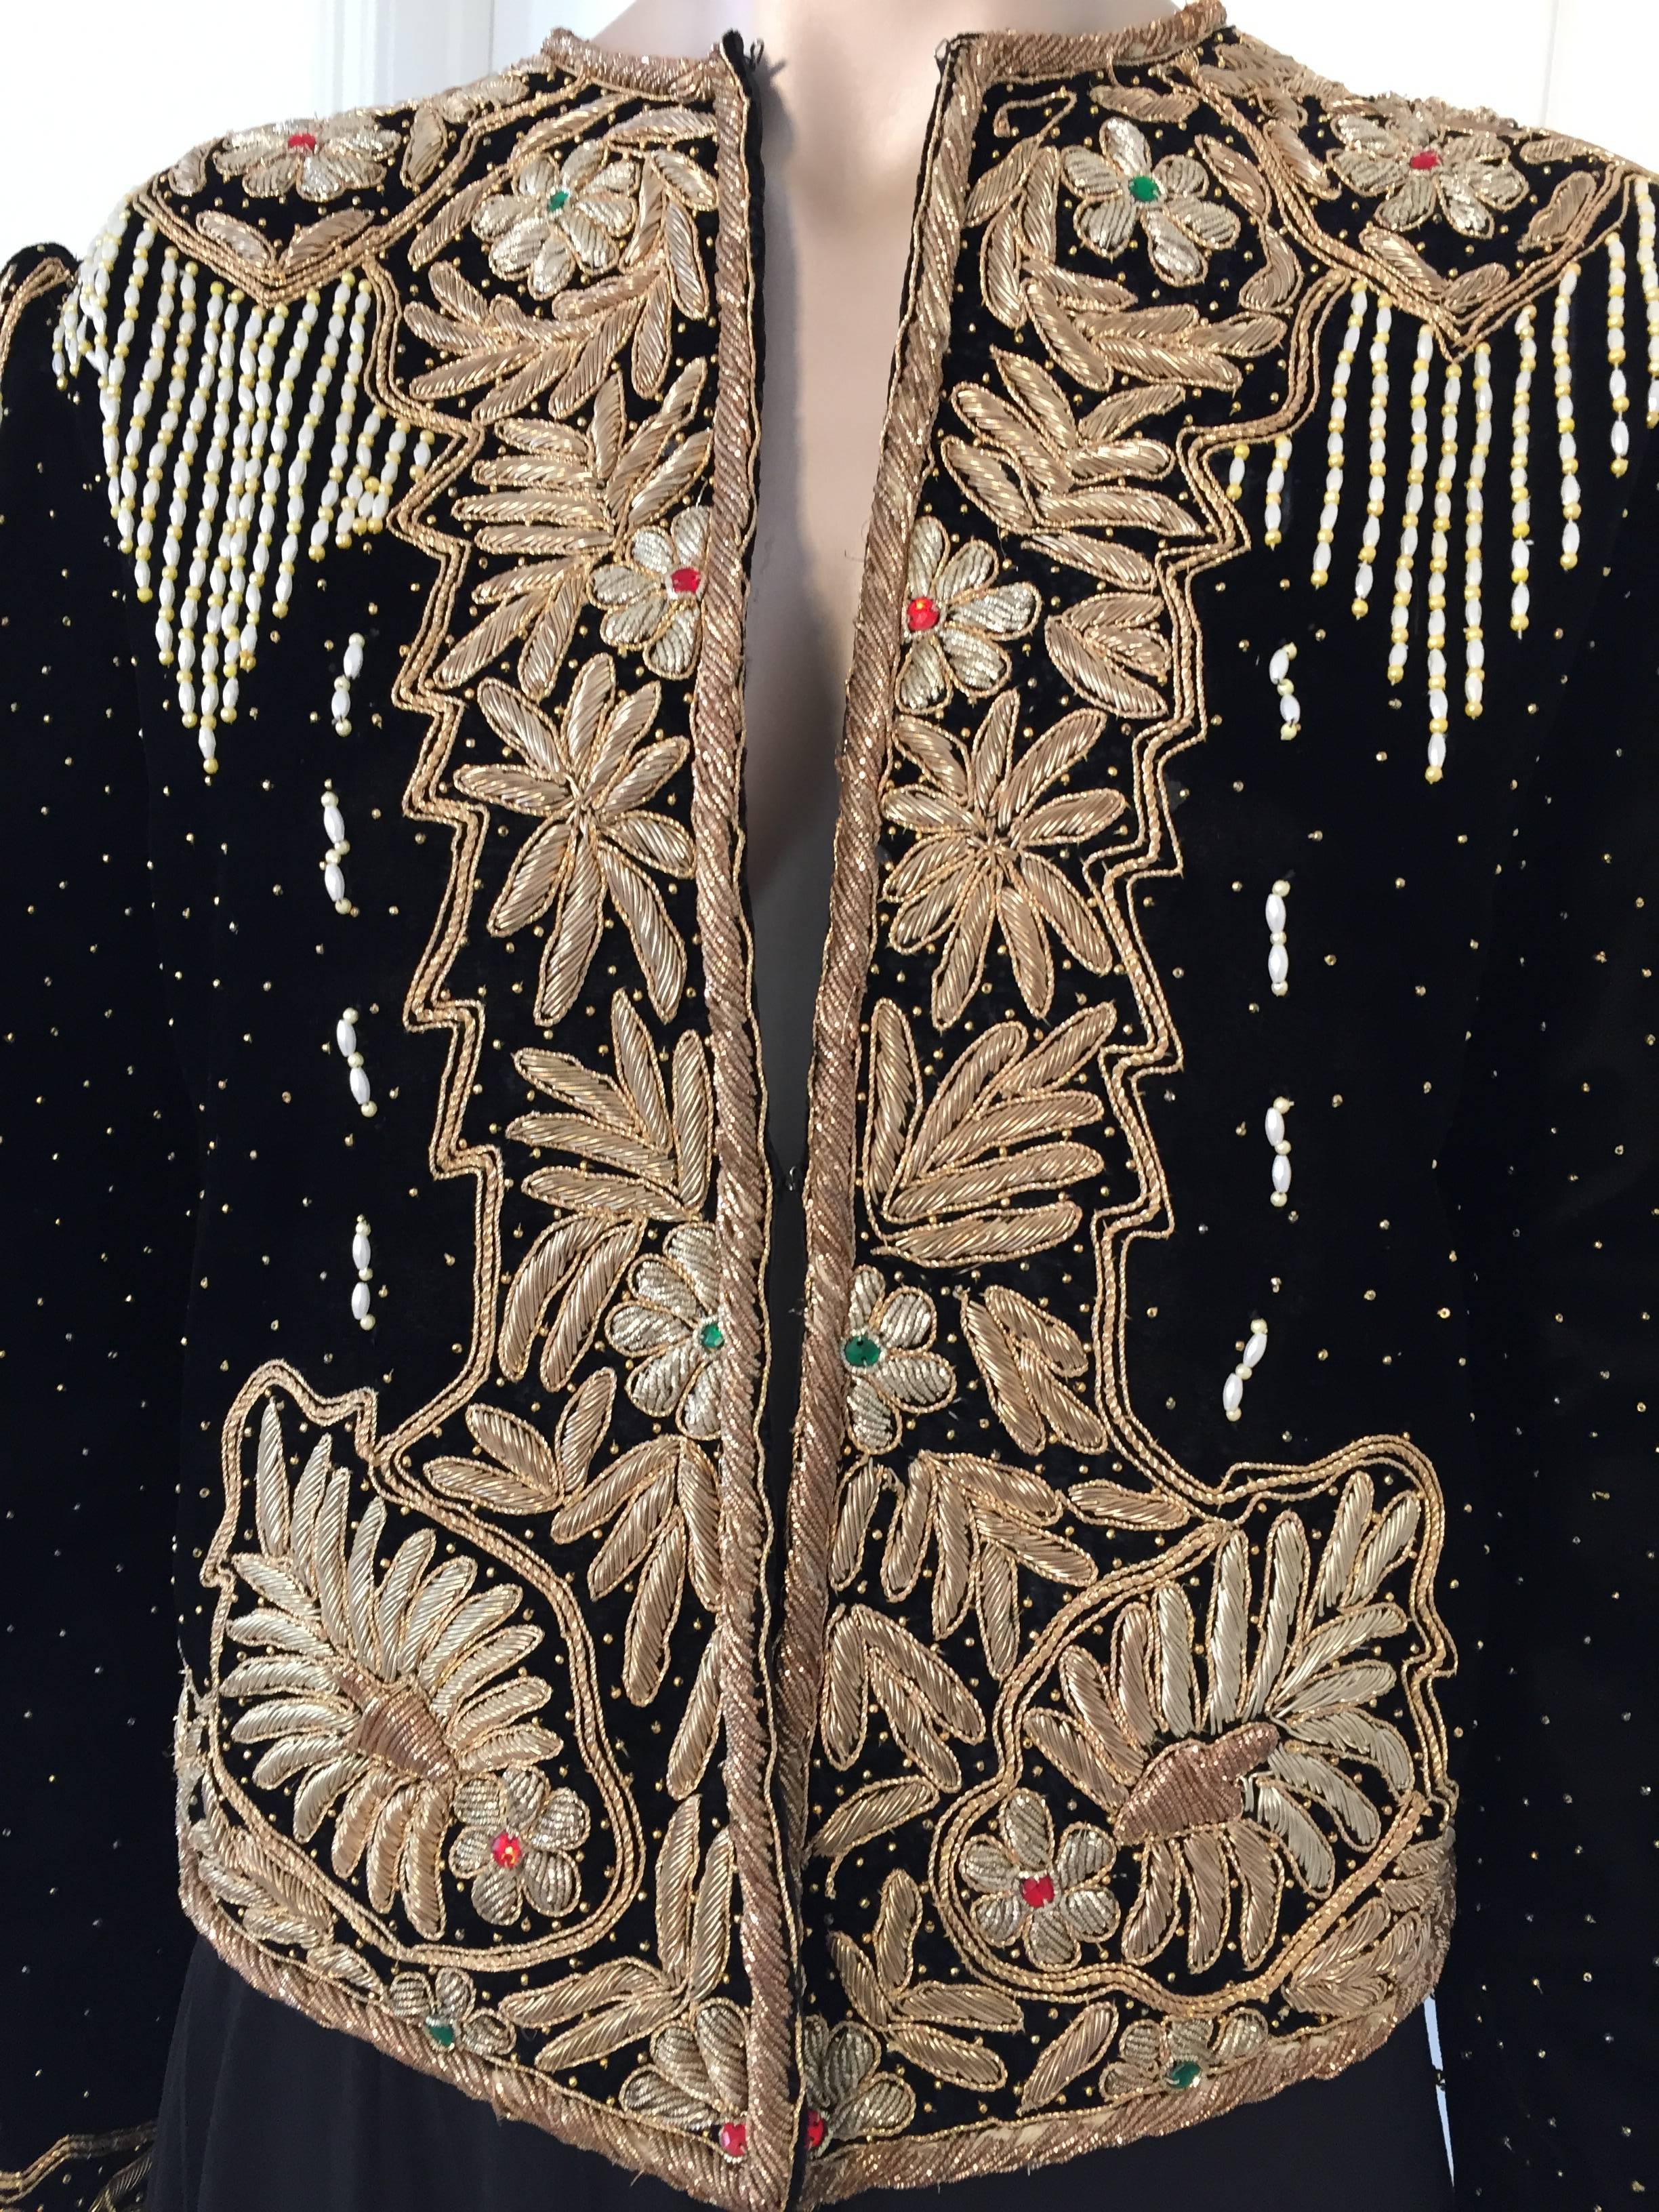 Magnifique robe de soirée en velours de soie brodée des années 1980, deux pièces, gilet et jupe.
Ce superbe blazer de soirée en velours de soie noir perlé et pailleté est orné de microperles de verre, de perles rondes dorées, de fils d'écaille dorés